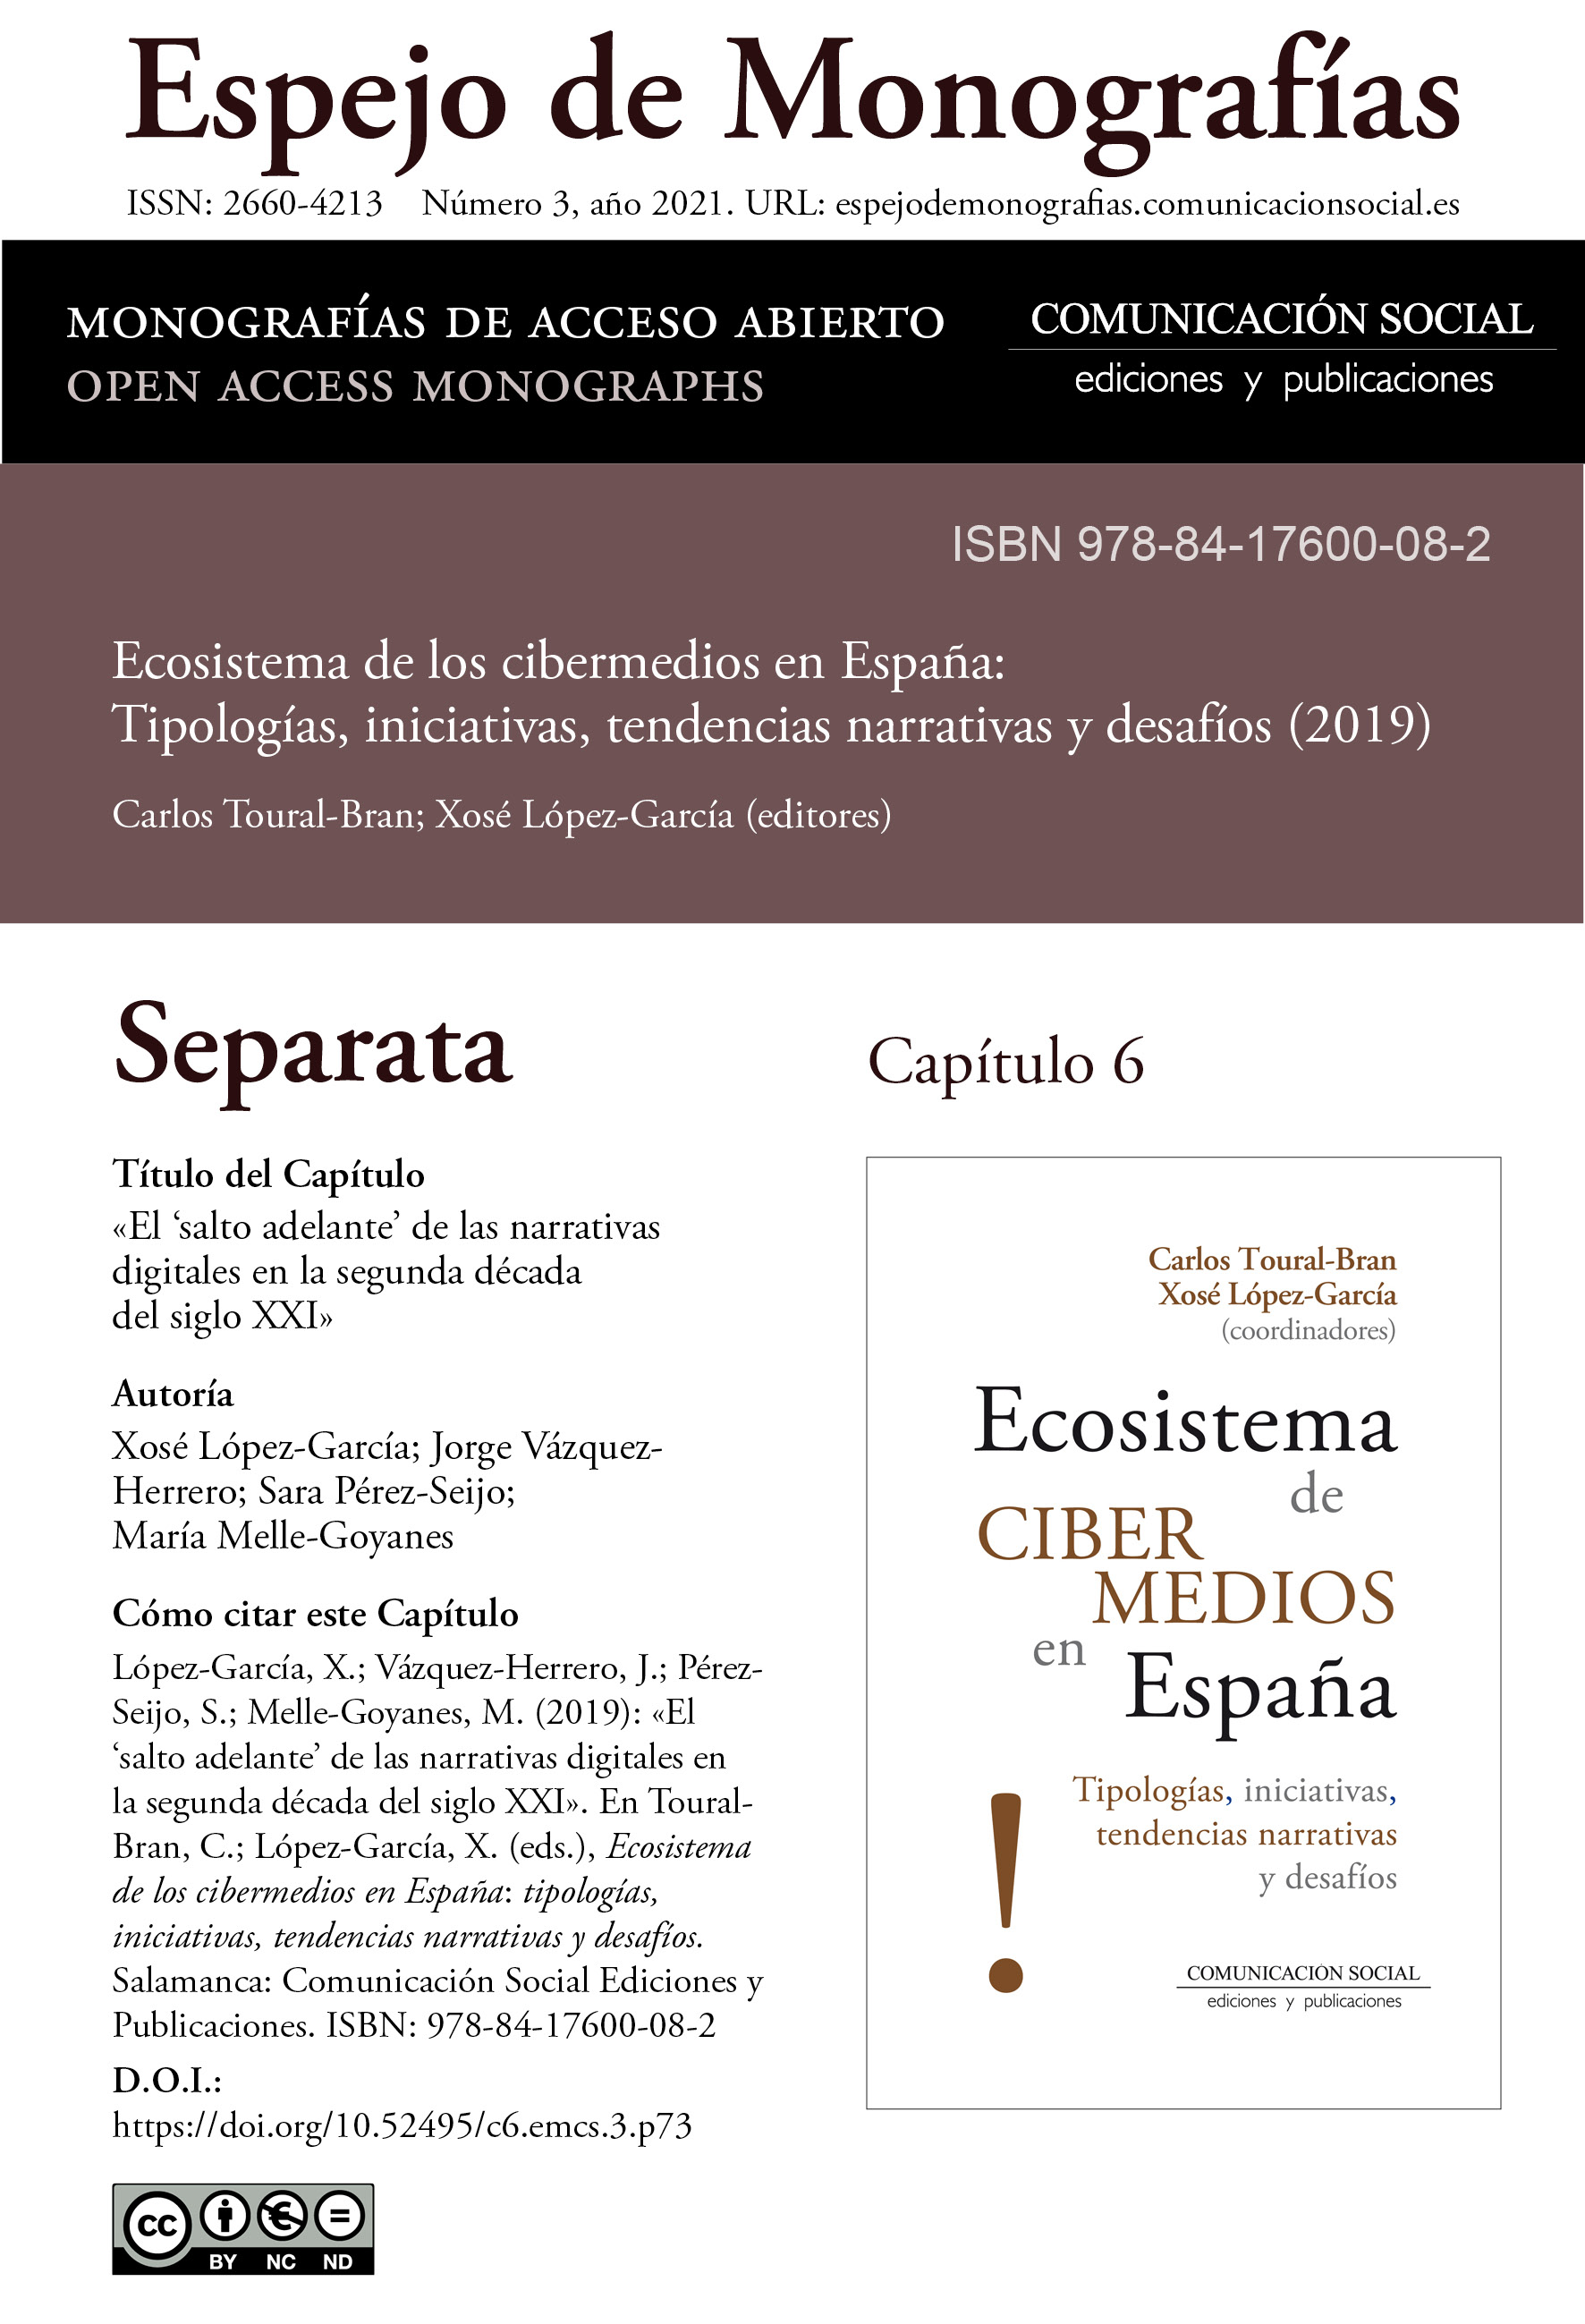 Separata del Capítulo 6 correspondiente a la monografía Ecosistema de cibermedios en España